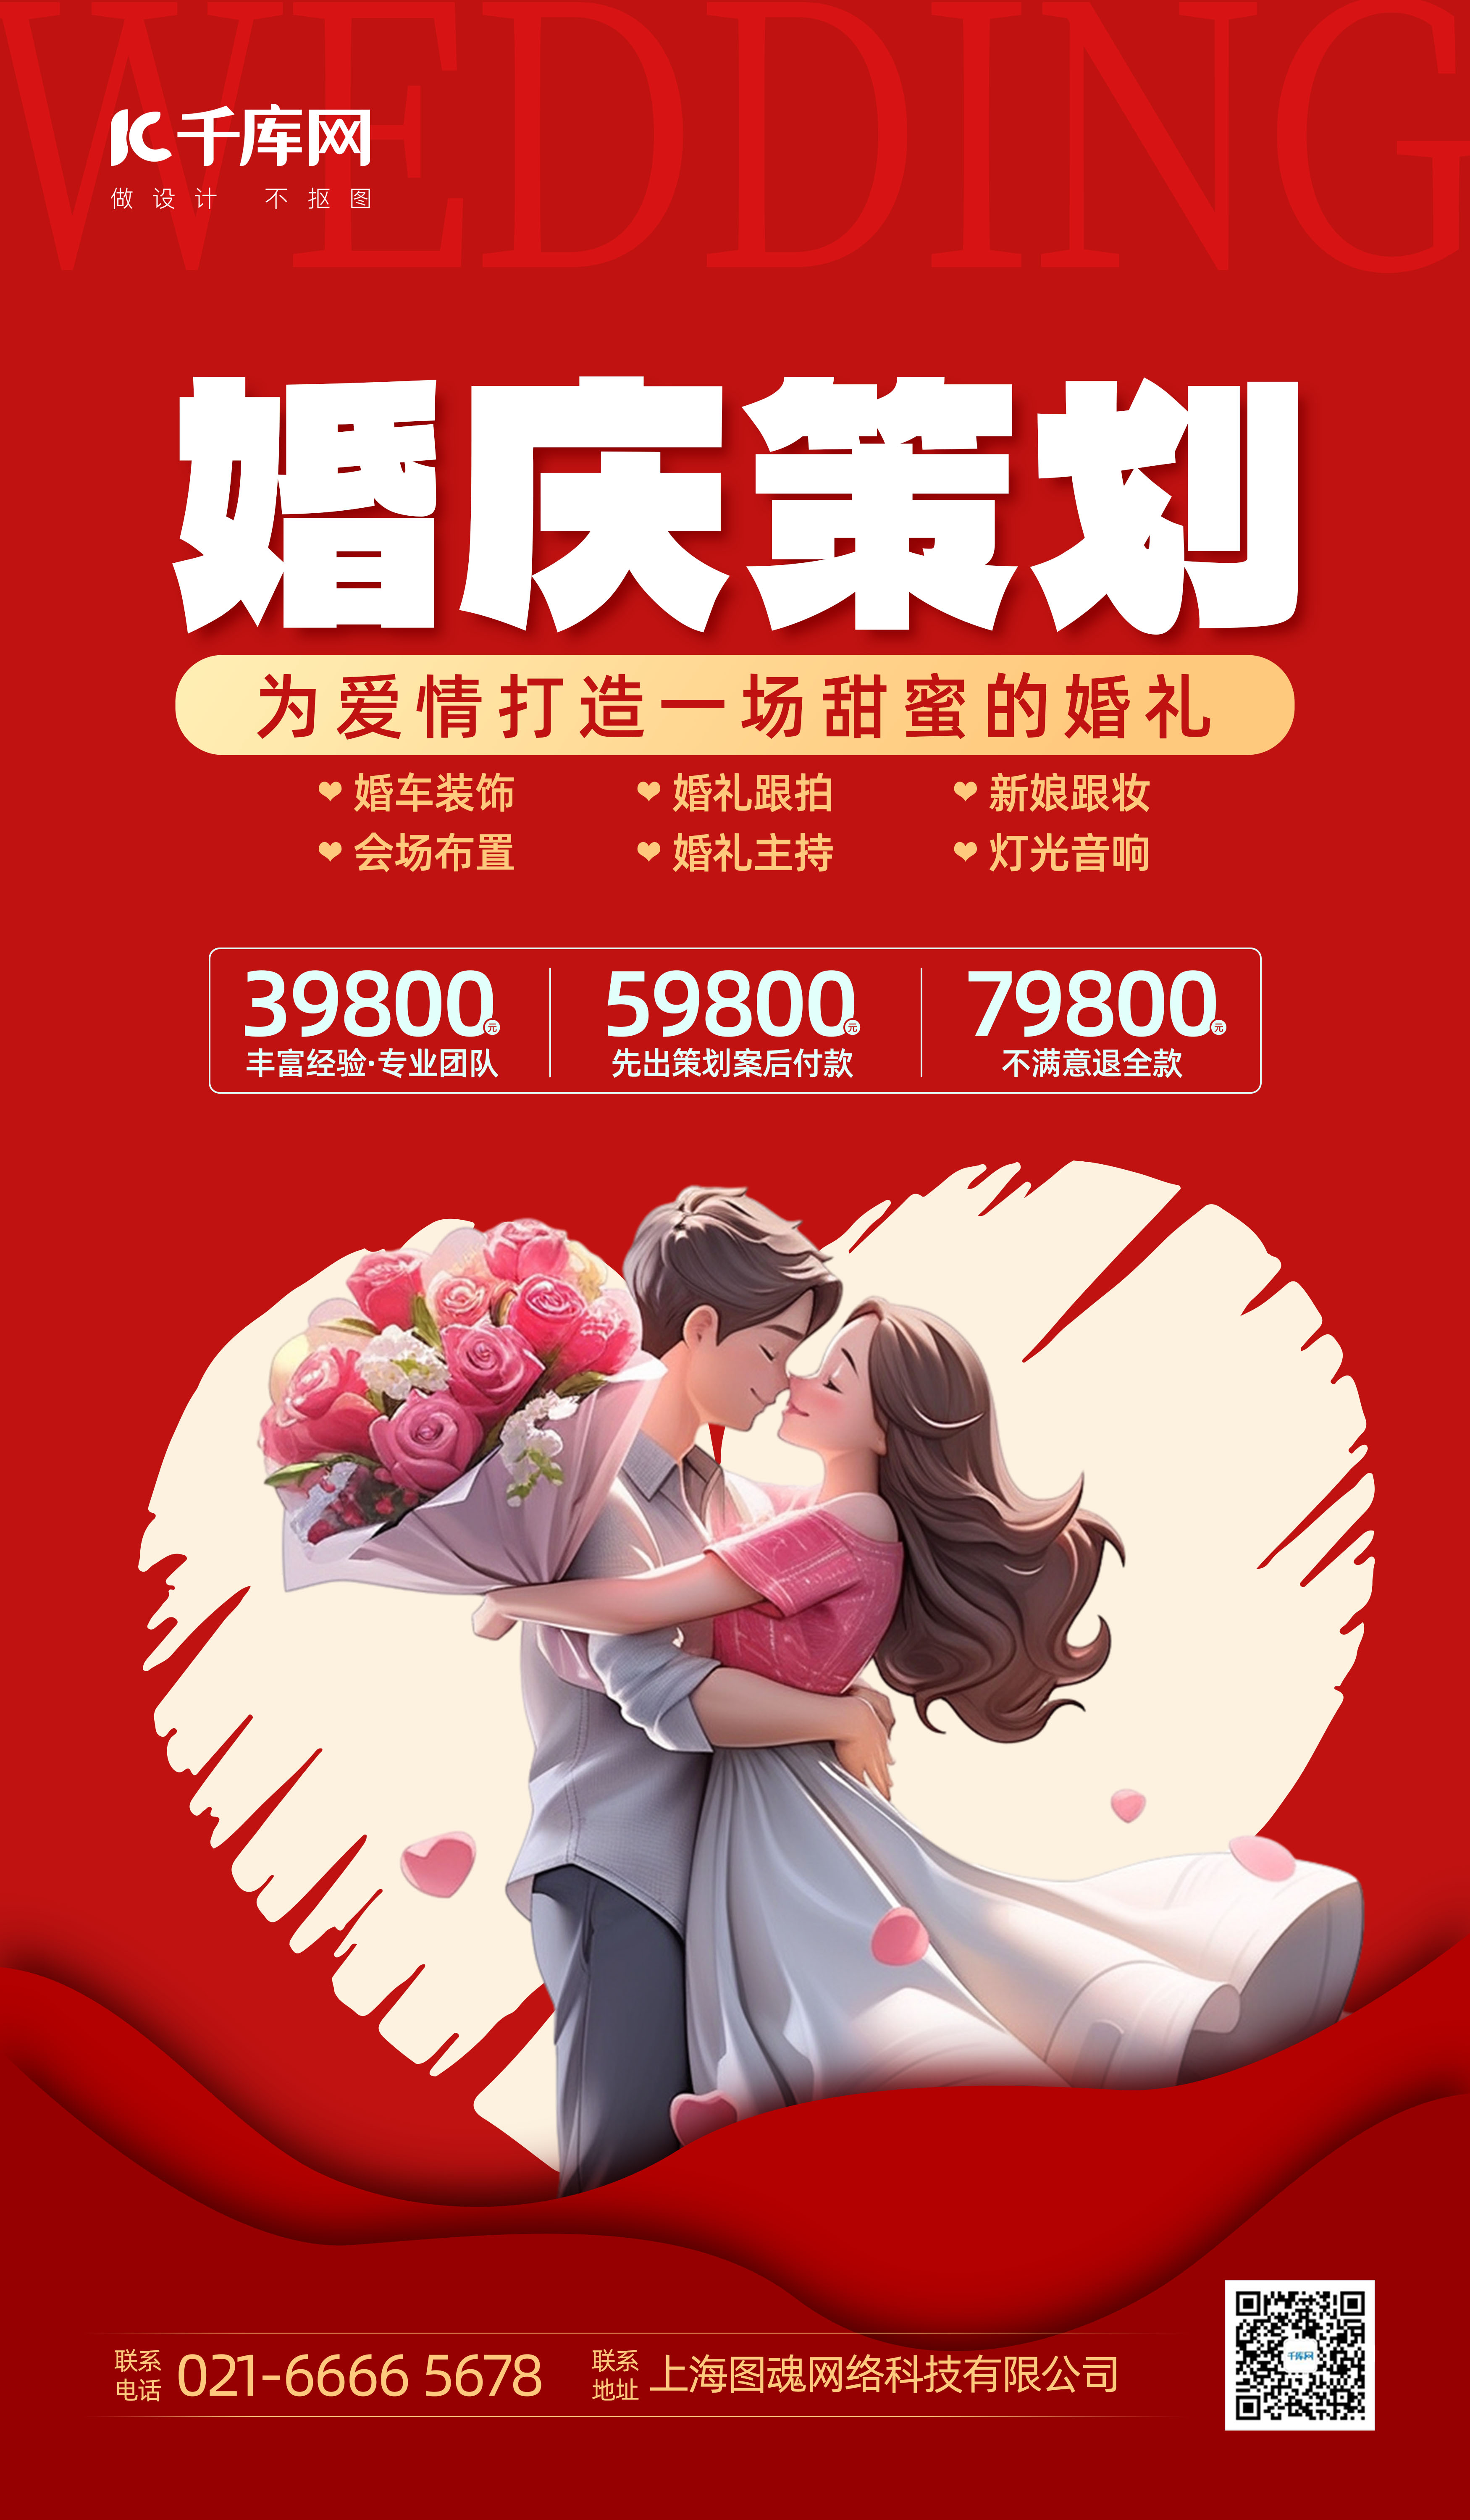 婚礼季 婚庆恋人 爱心红色扁平广告宣传海报图片